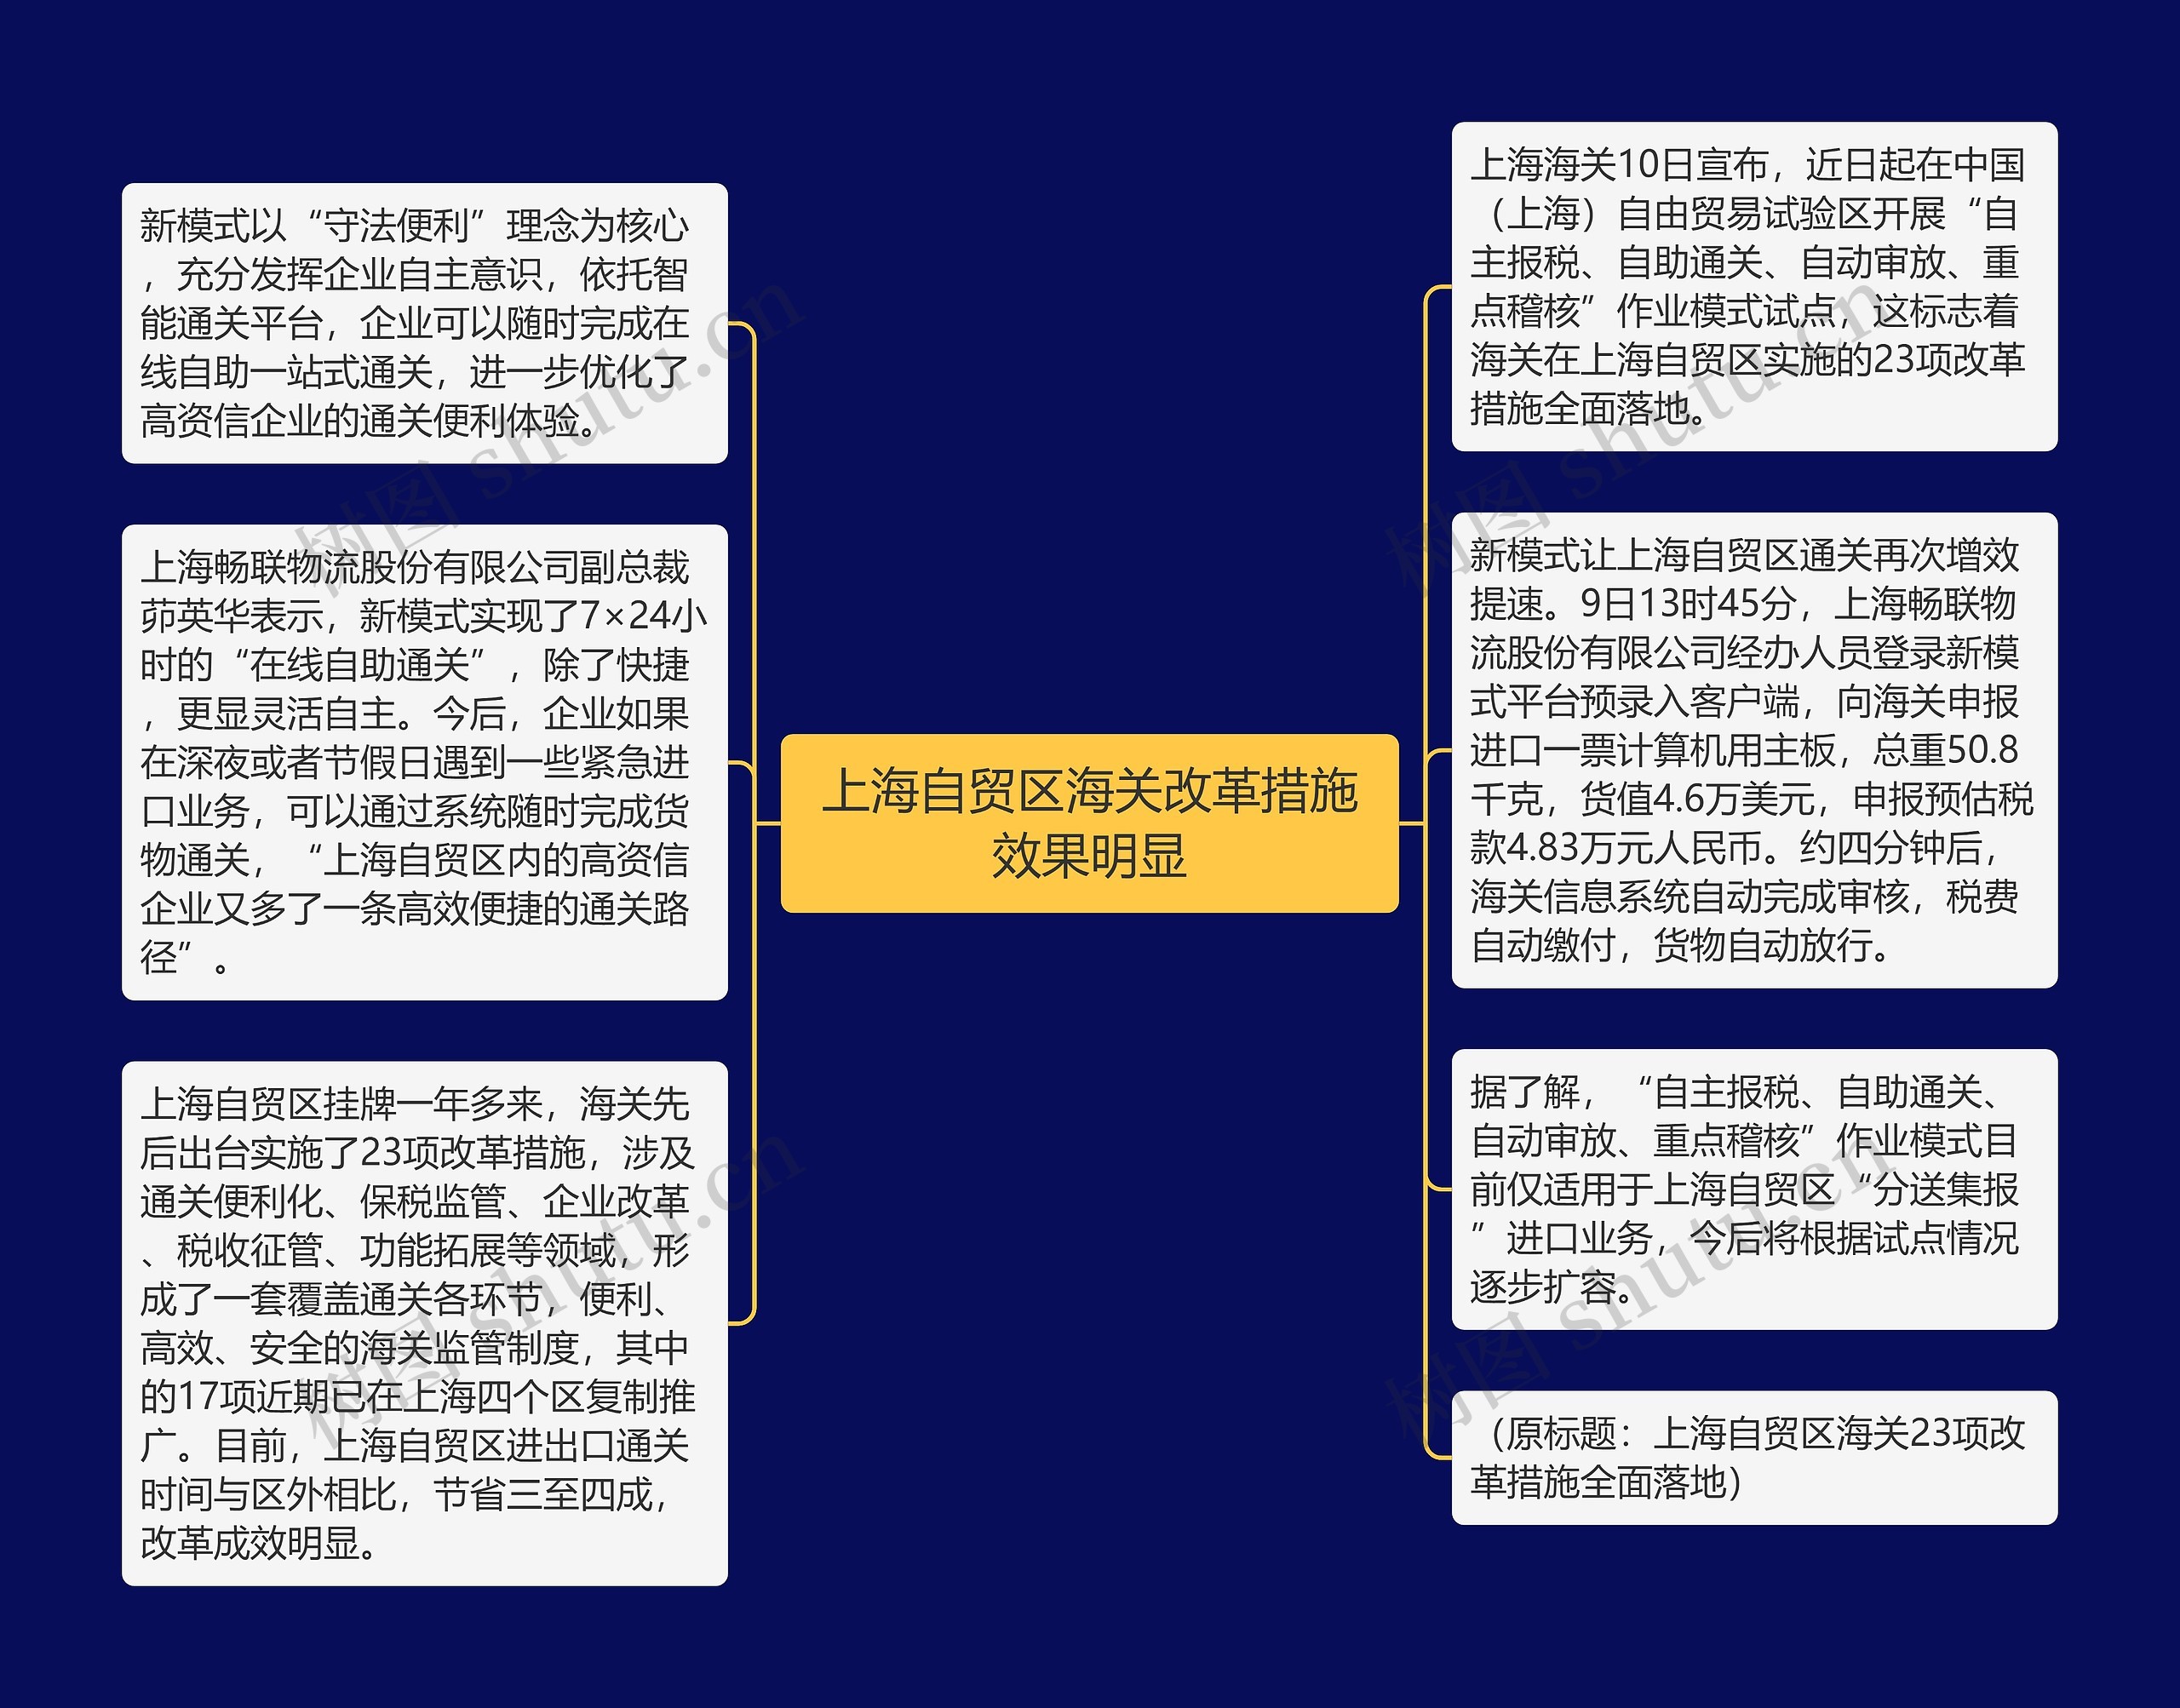 上海自贸区海关改革措施效果明显